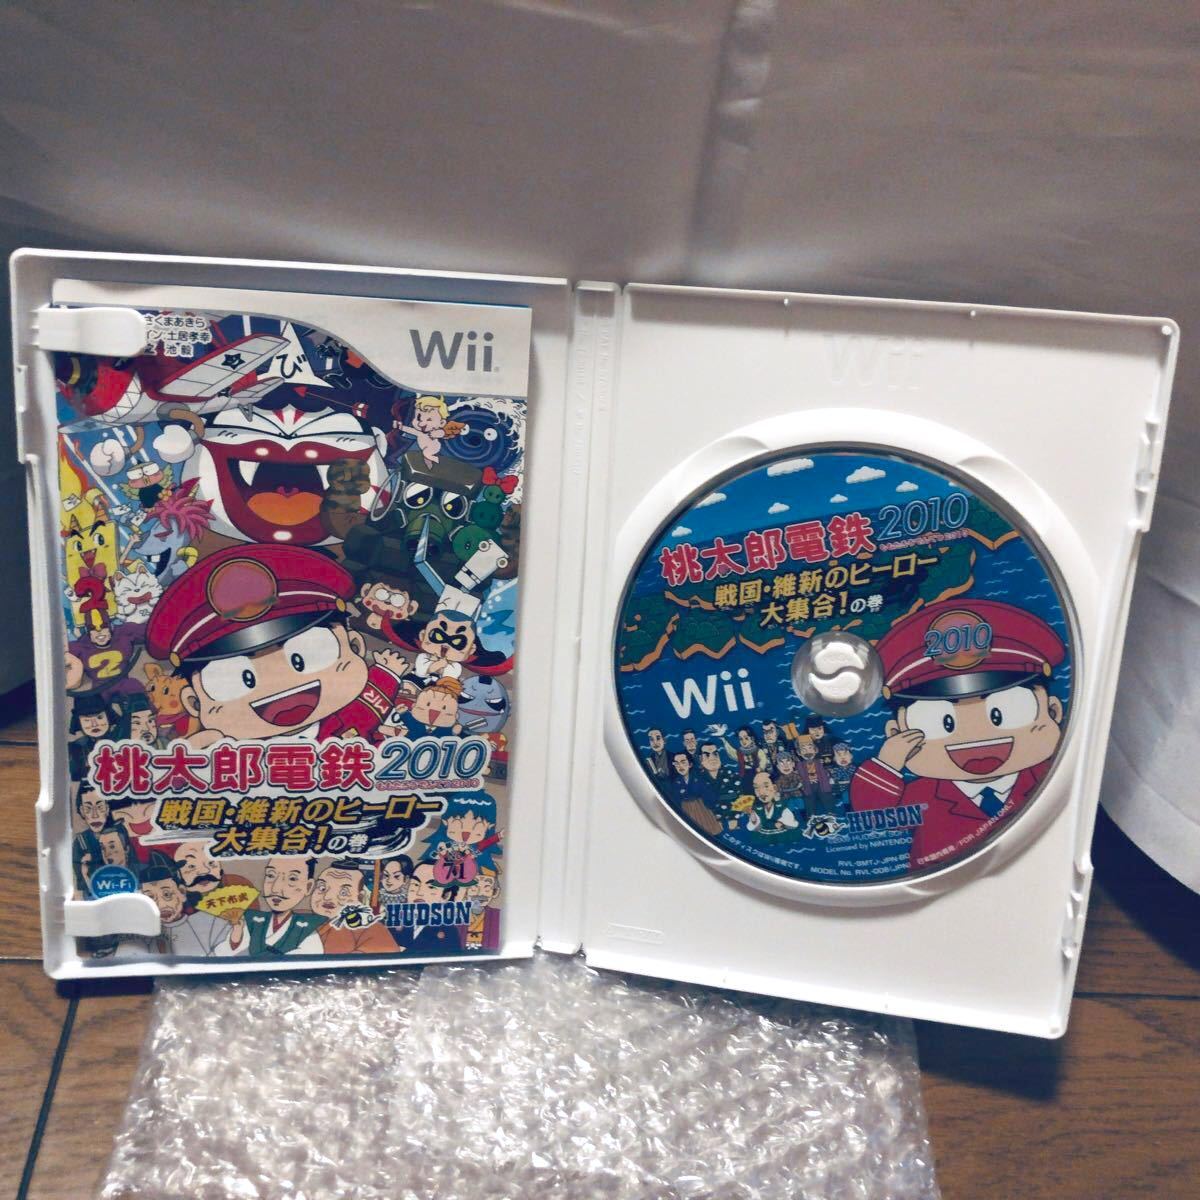 桃太郎電鉄2010 戦国・維新のヒーロー大集合の巻！ Wii